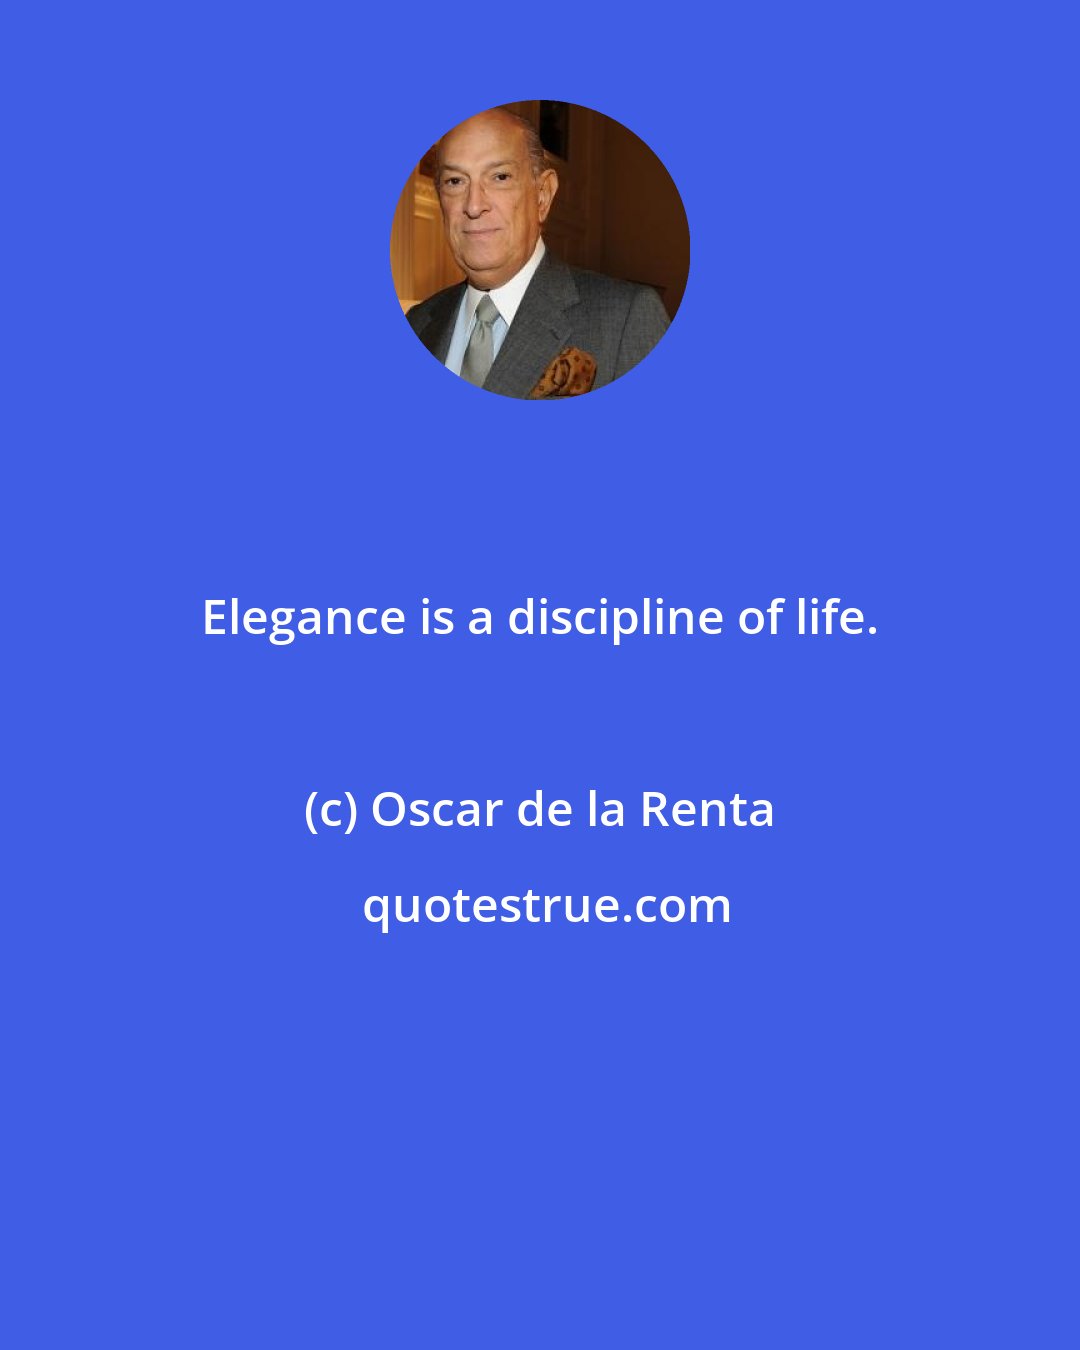 Oscar de la Renta: Elegance is a discipline of life.